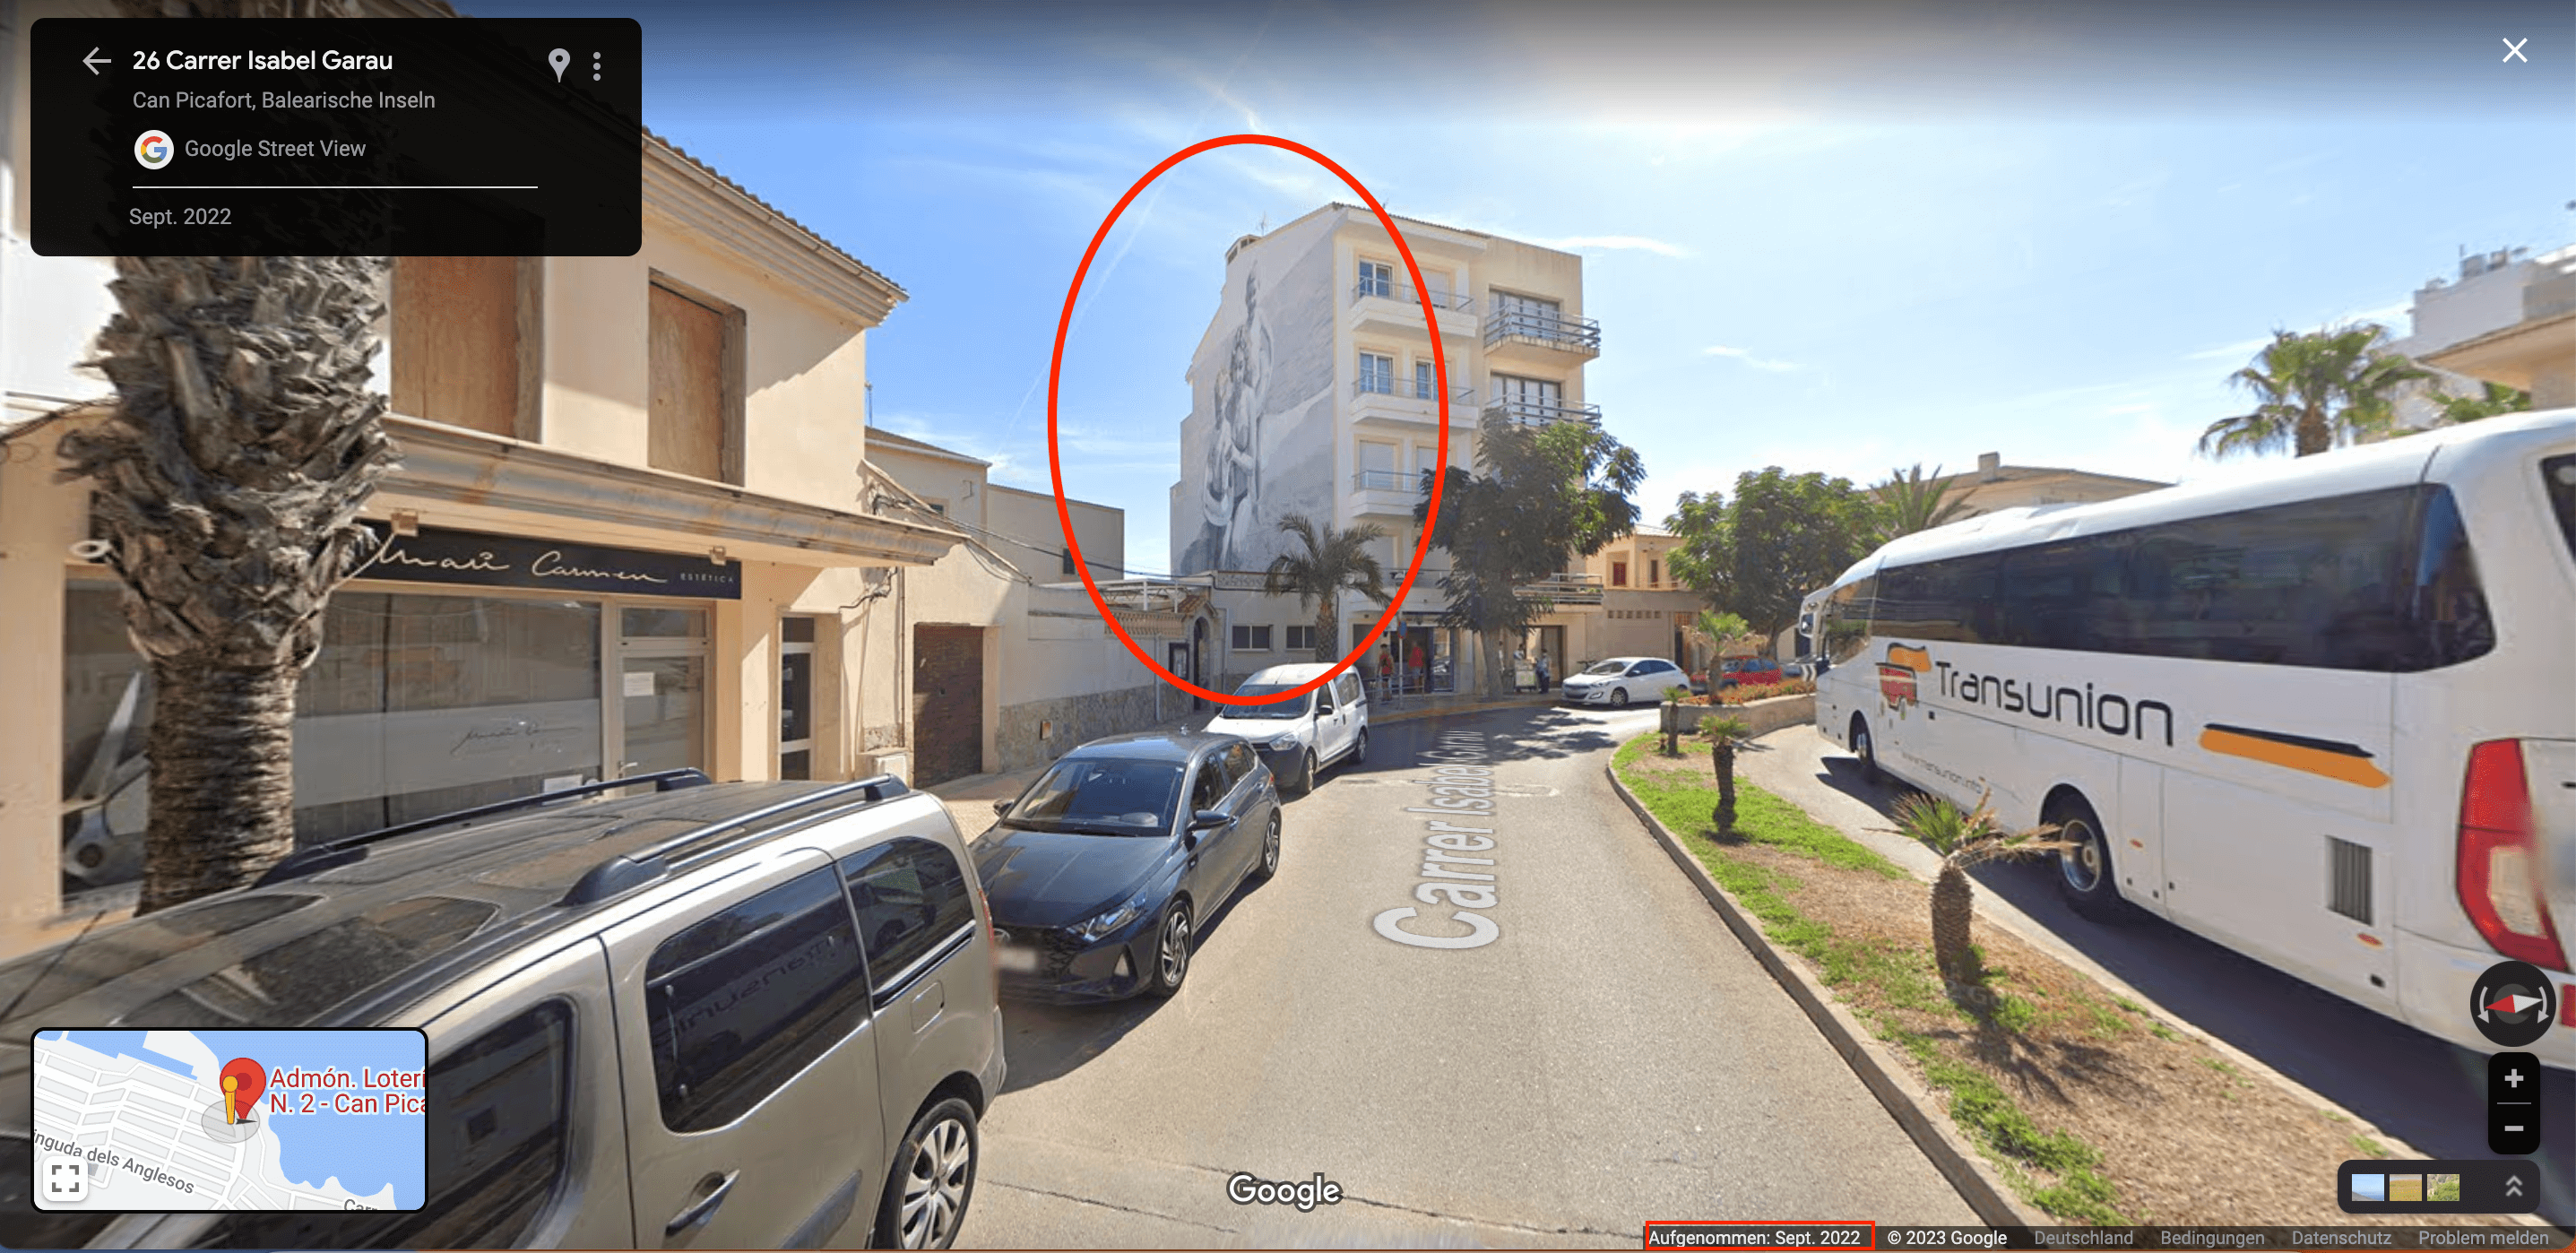 Bei Google-Maps ist das Wandgemälde in Can Picafort zu finden, hier mit Blick aus der Carrer Isabel Garau